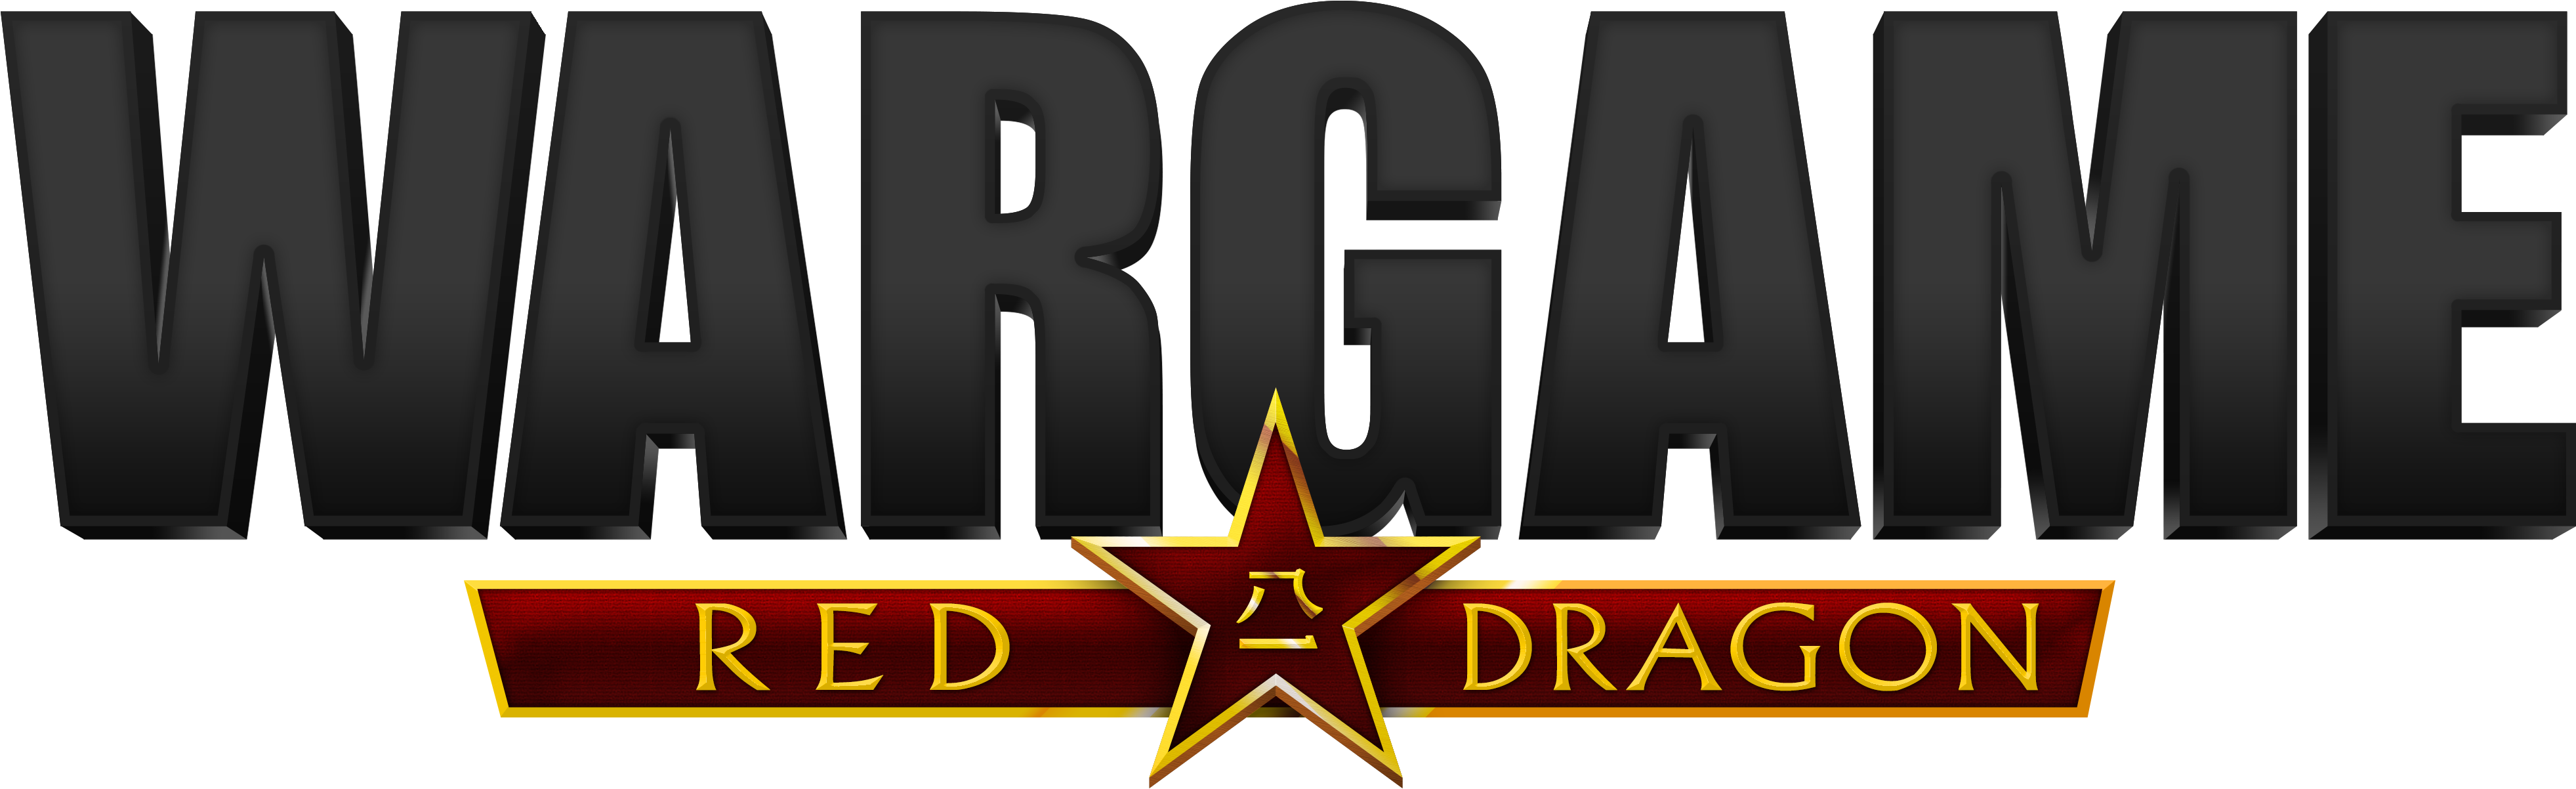 Wargame: Red Dragon Epic Free Game